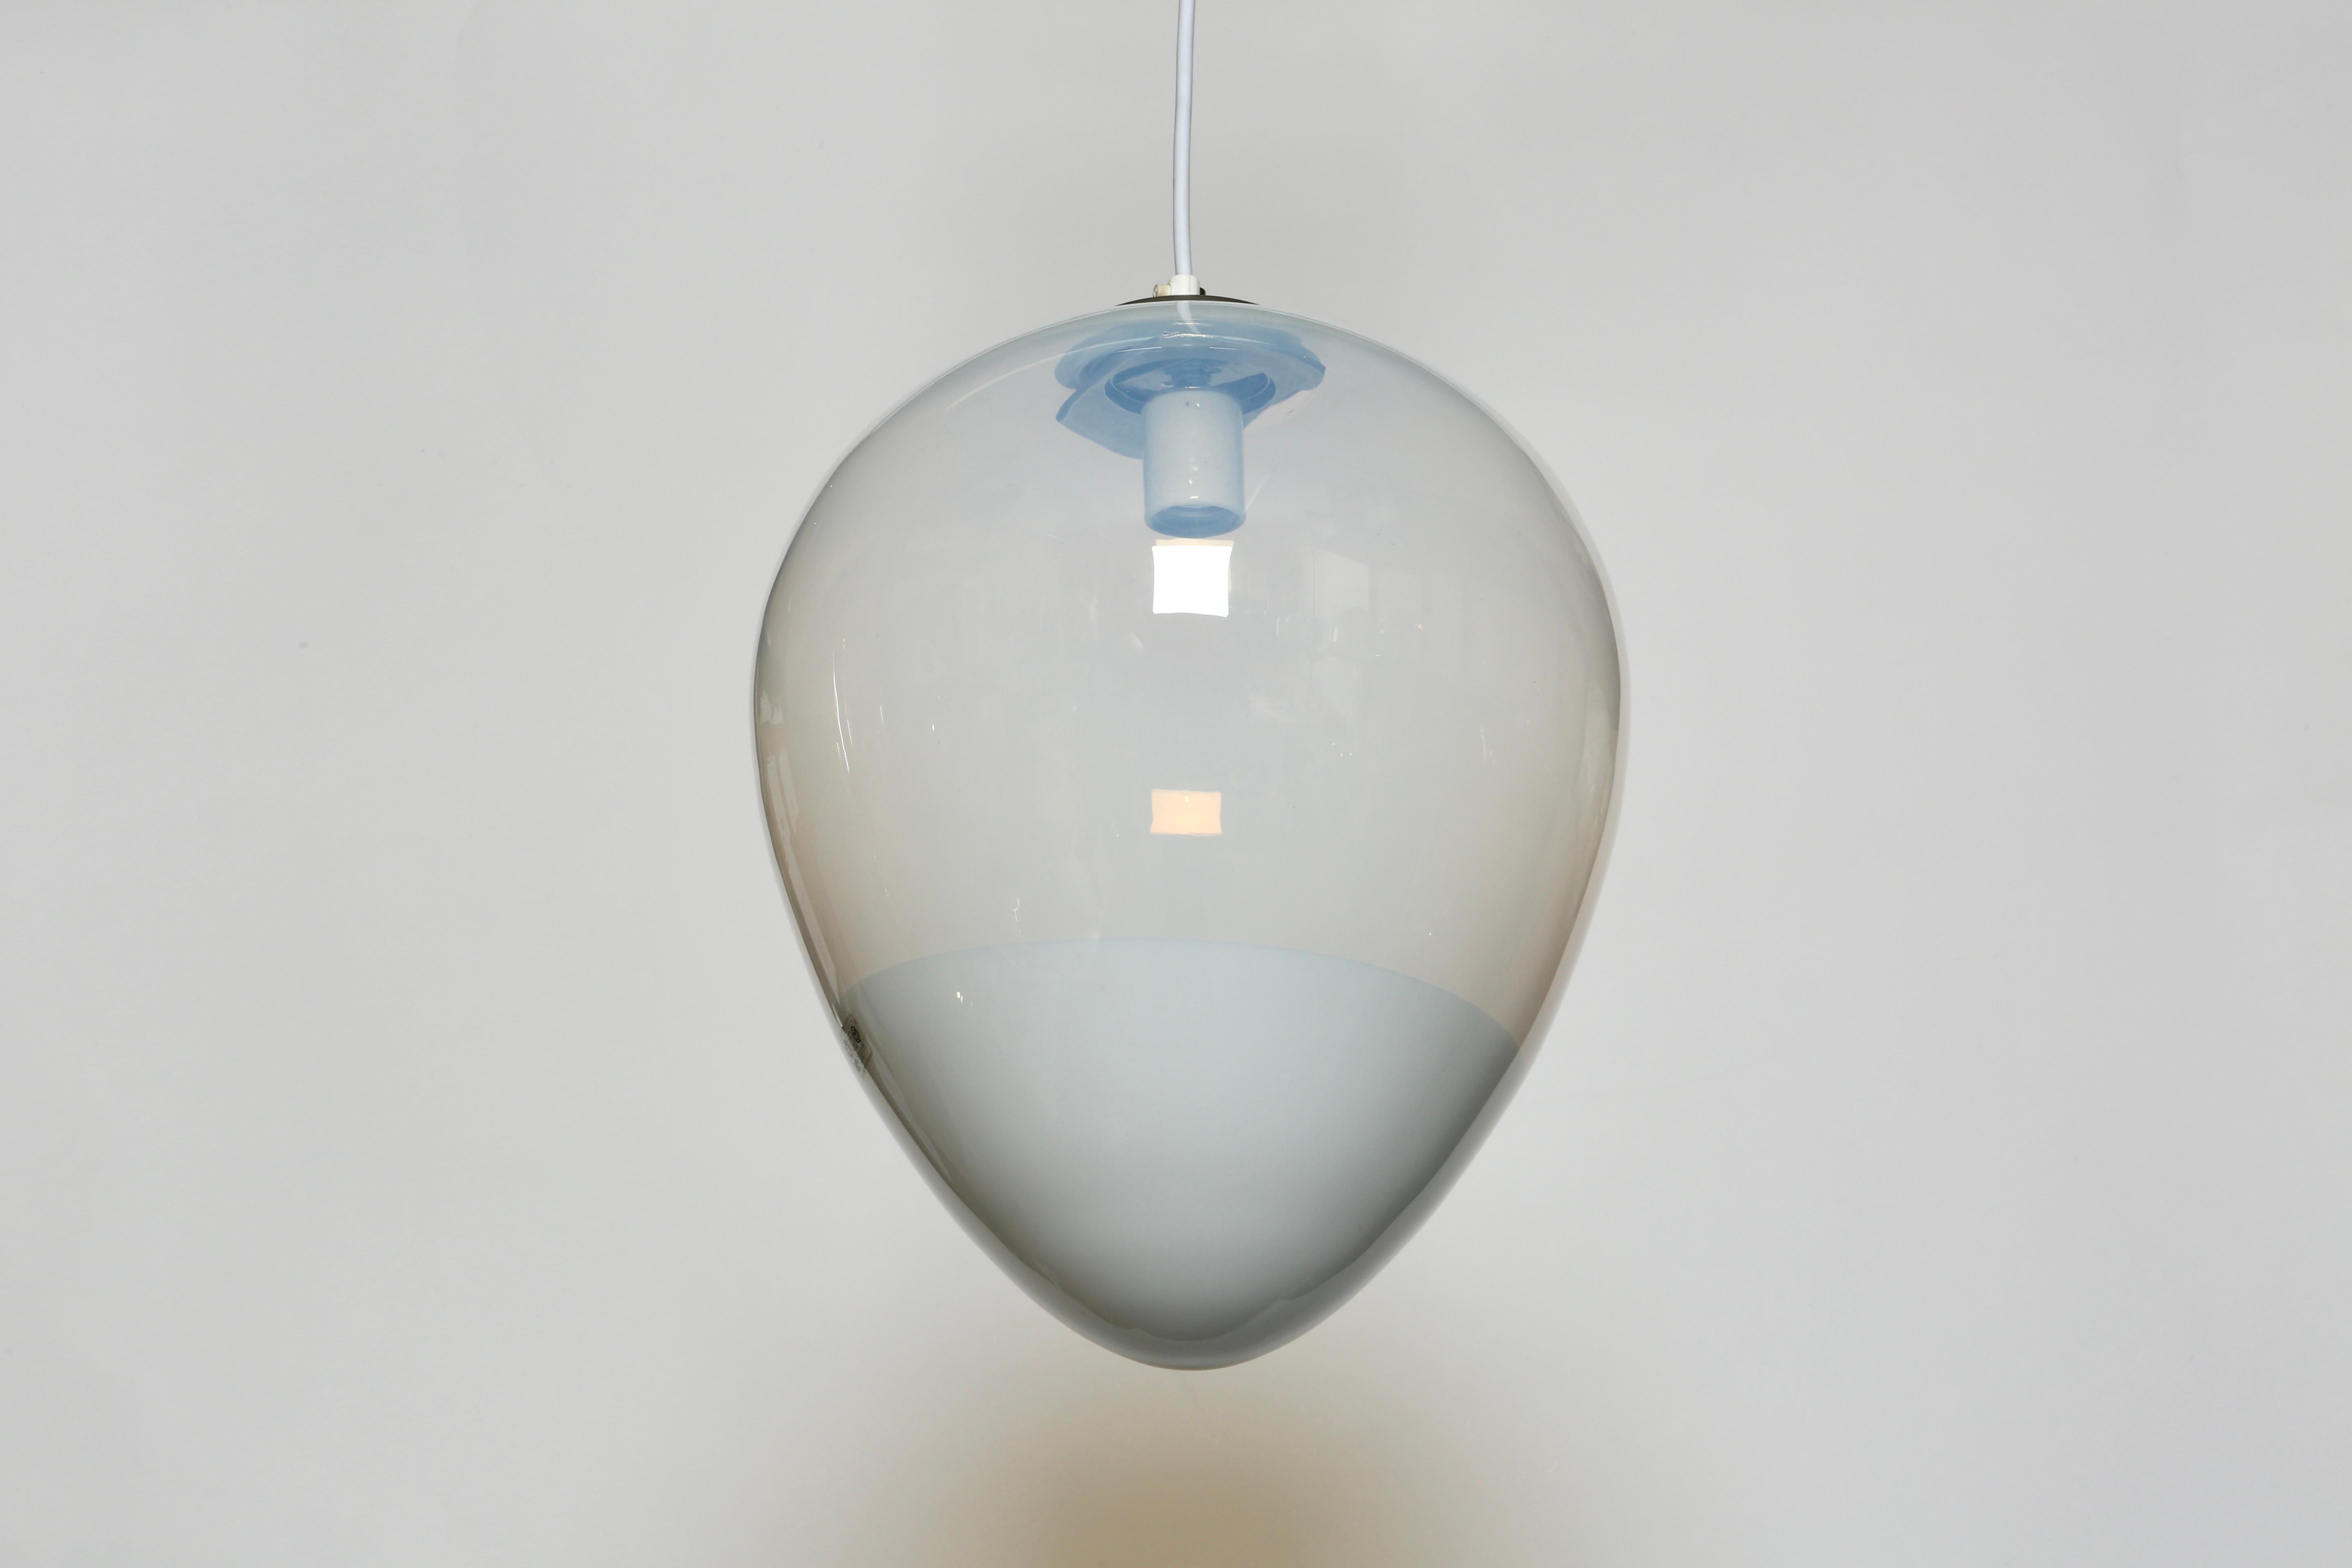 Murano-Glas-Deckenstativ von Leucos.
Hergestellt in Italien in den 1970er Jahren.
Mundgeblasenes Glas.
Rewired for US.
Für eine Glühbirne mit mittlerem Sockel geeignet.
Die Gesamthöhe ist einstellbar, sie kann auch kürzer sein.
1 Deckenstativ ist